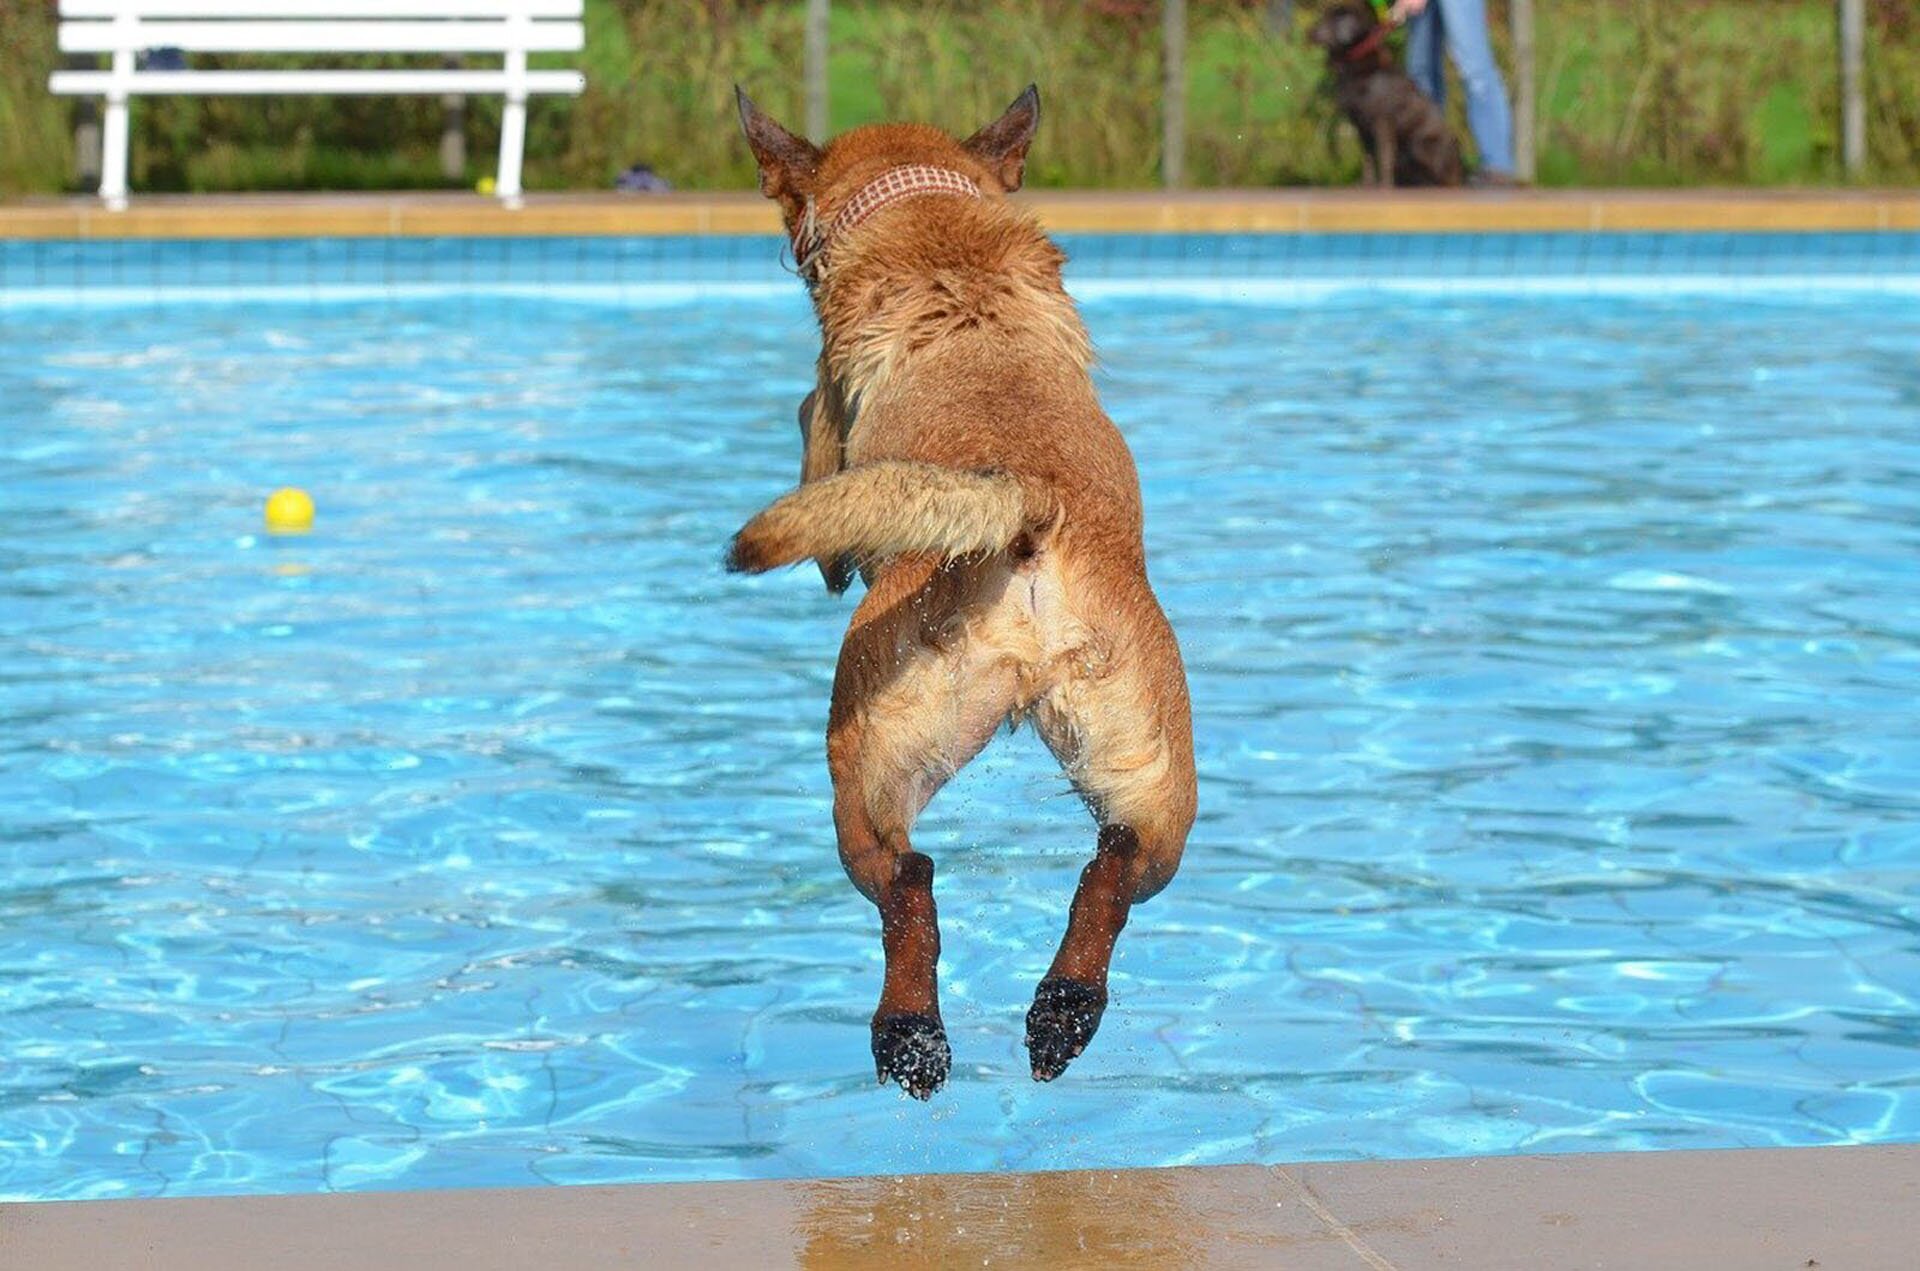 Rys. a. Zdjęcie przedstawia taflę wody w basenie i unoszącą się na jej powierzchni żółtą piłkę. Znad brzegu basenu w wyskoku pokazany jest pies uchwycony w ruchu w momencie skoku do wody. Cała sytuacja pokazana jest z pozycji obserwatora: na pierwszym planie sylwetka psa od tyłu nad basenem, na drugim planie  (na drugim brzegu basenu) biała ławka i człowiek trzymający za obrożę innego psa.